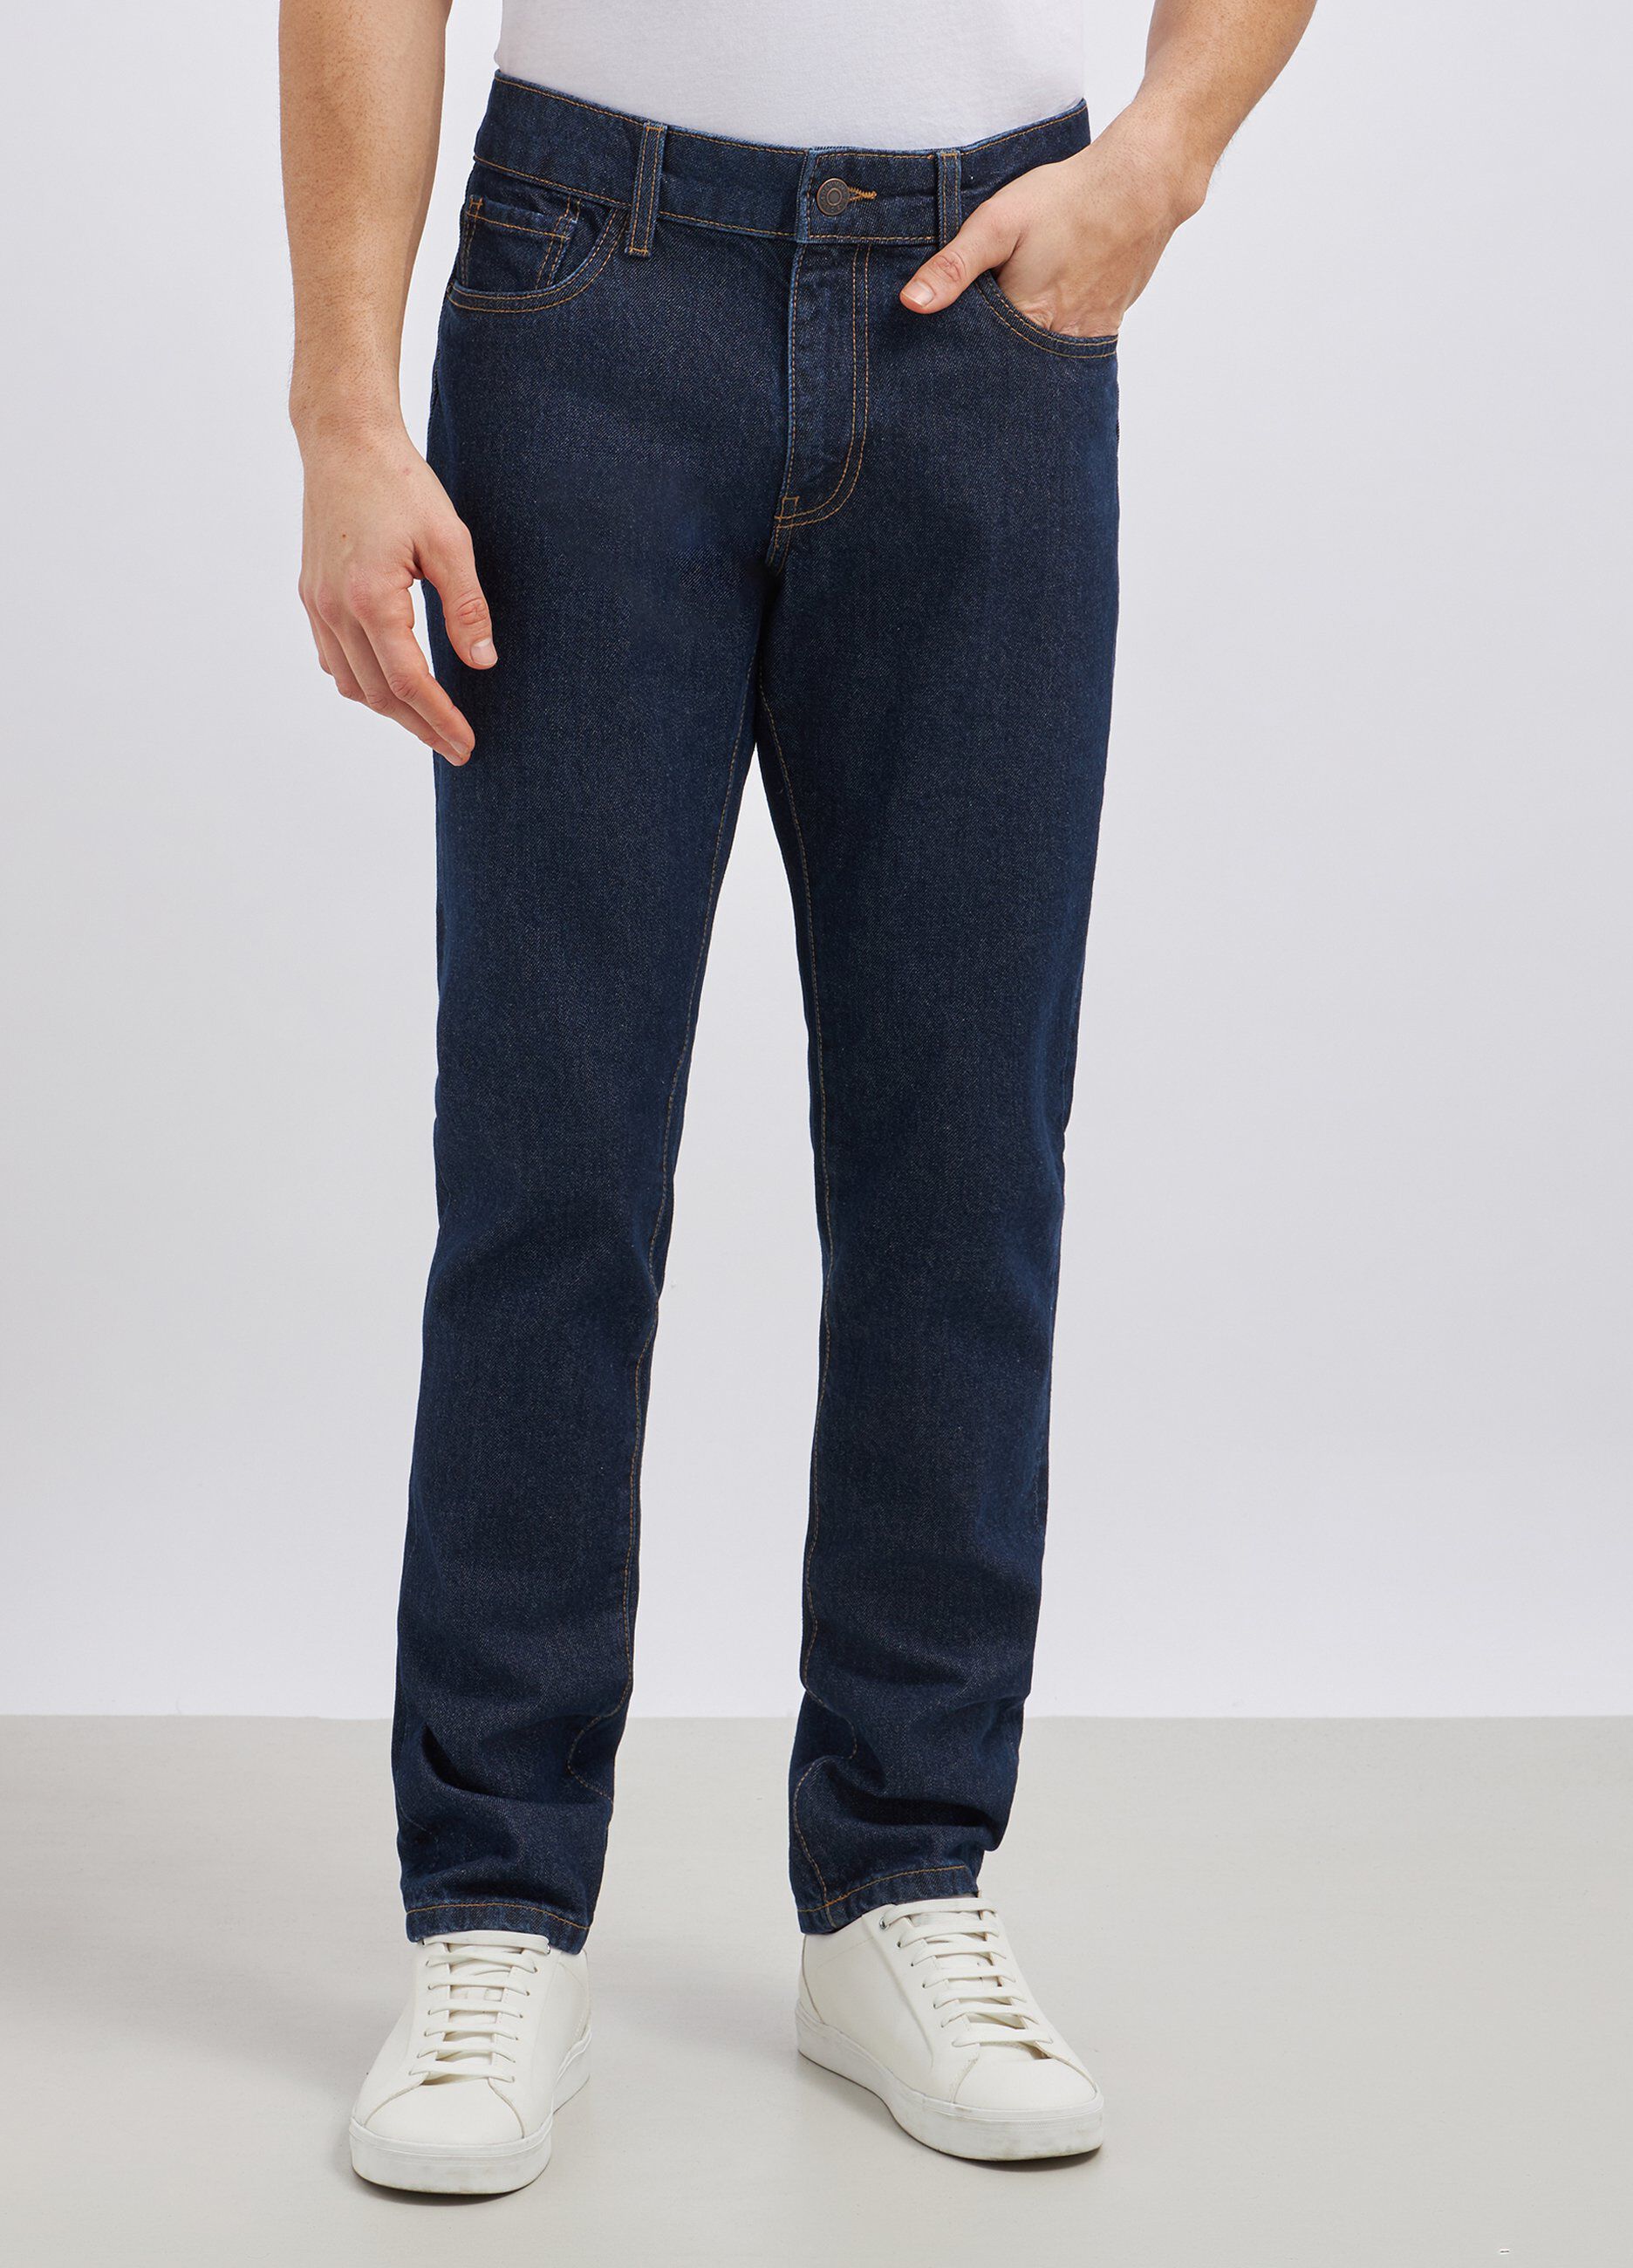 Jeans modello 5 tasche in puro cotone uomo_1